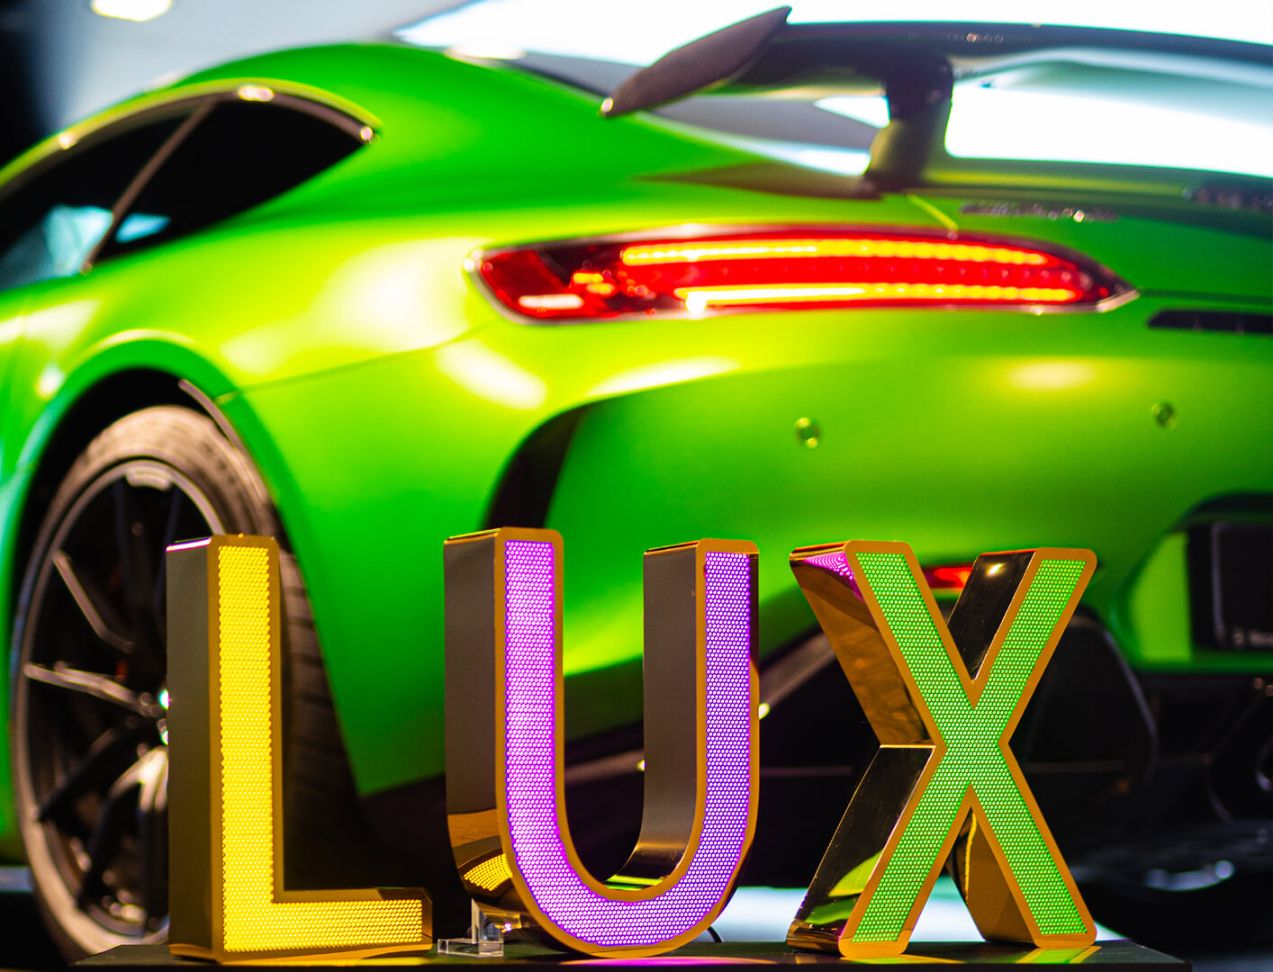 LUX-Buchstaben aus perforiertem Edelstahl - LUX-Buchstaben aus goldglänzendem, perforiertem Edelstahl, LED-hinterleuchtet, im Mercedes-Showroom